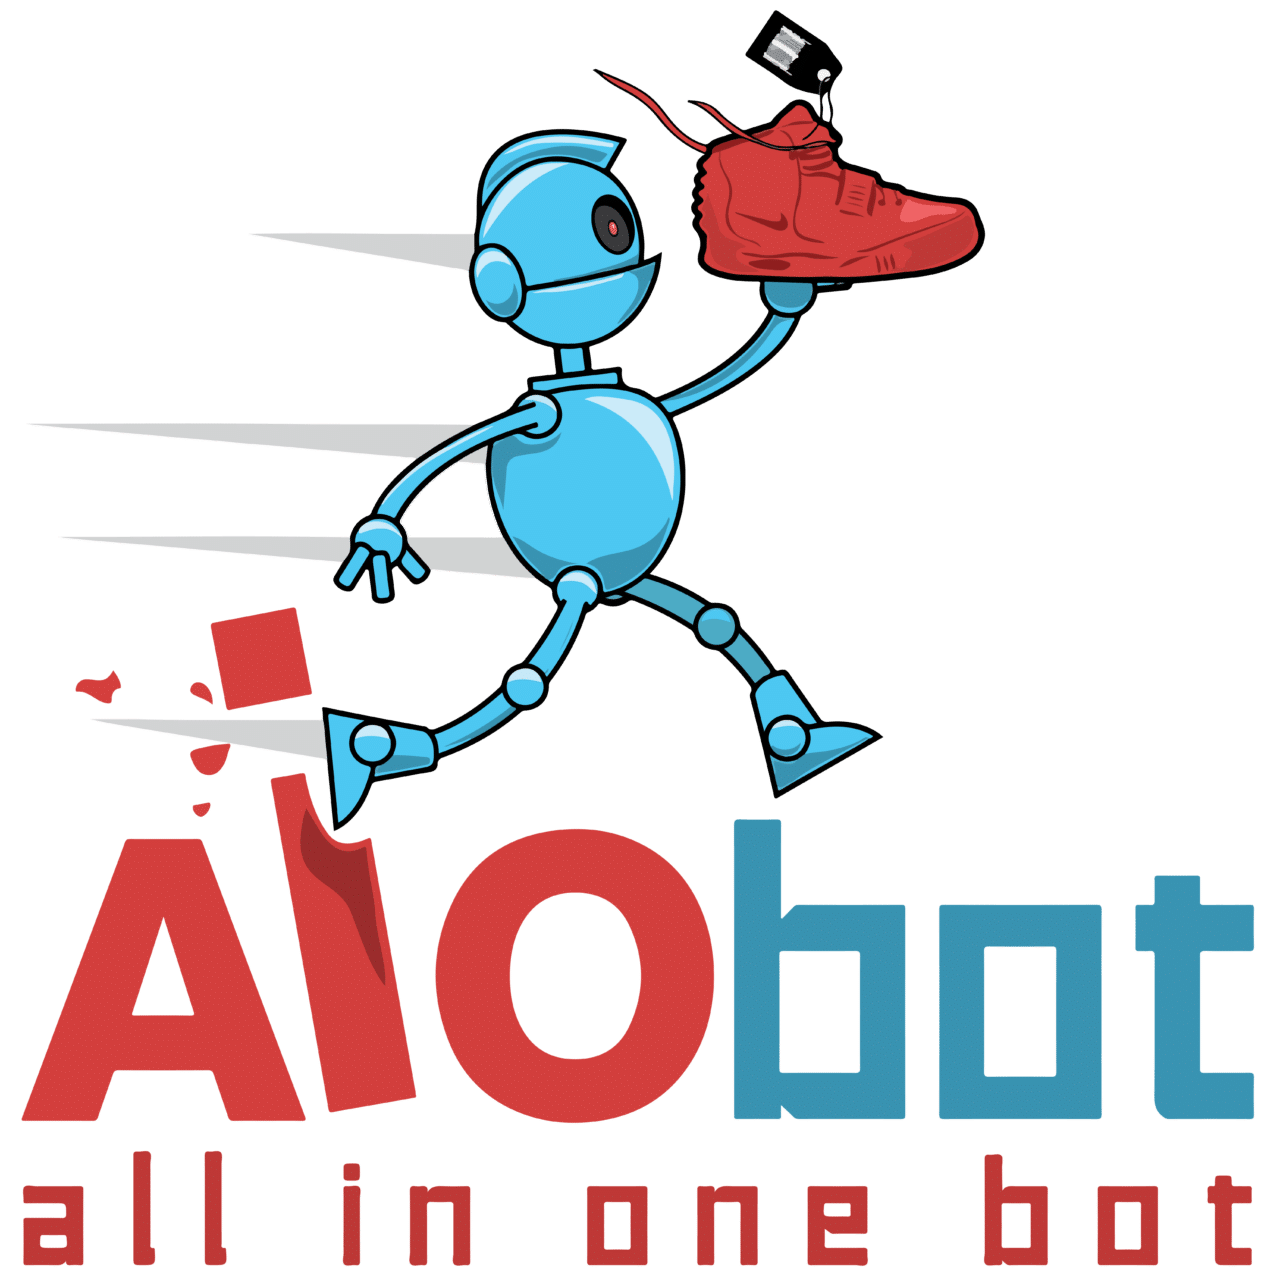 AIO Bot